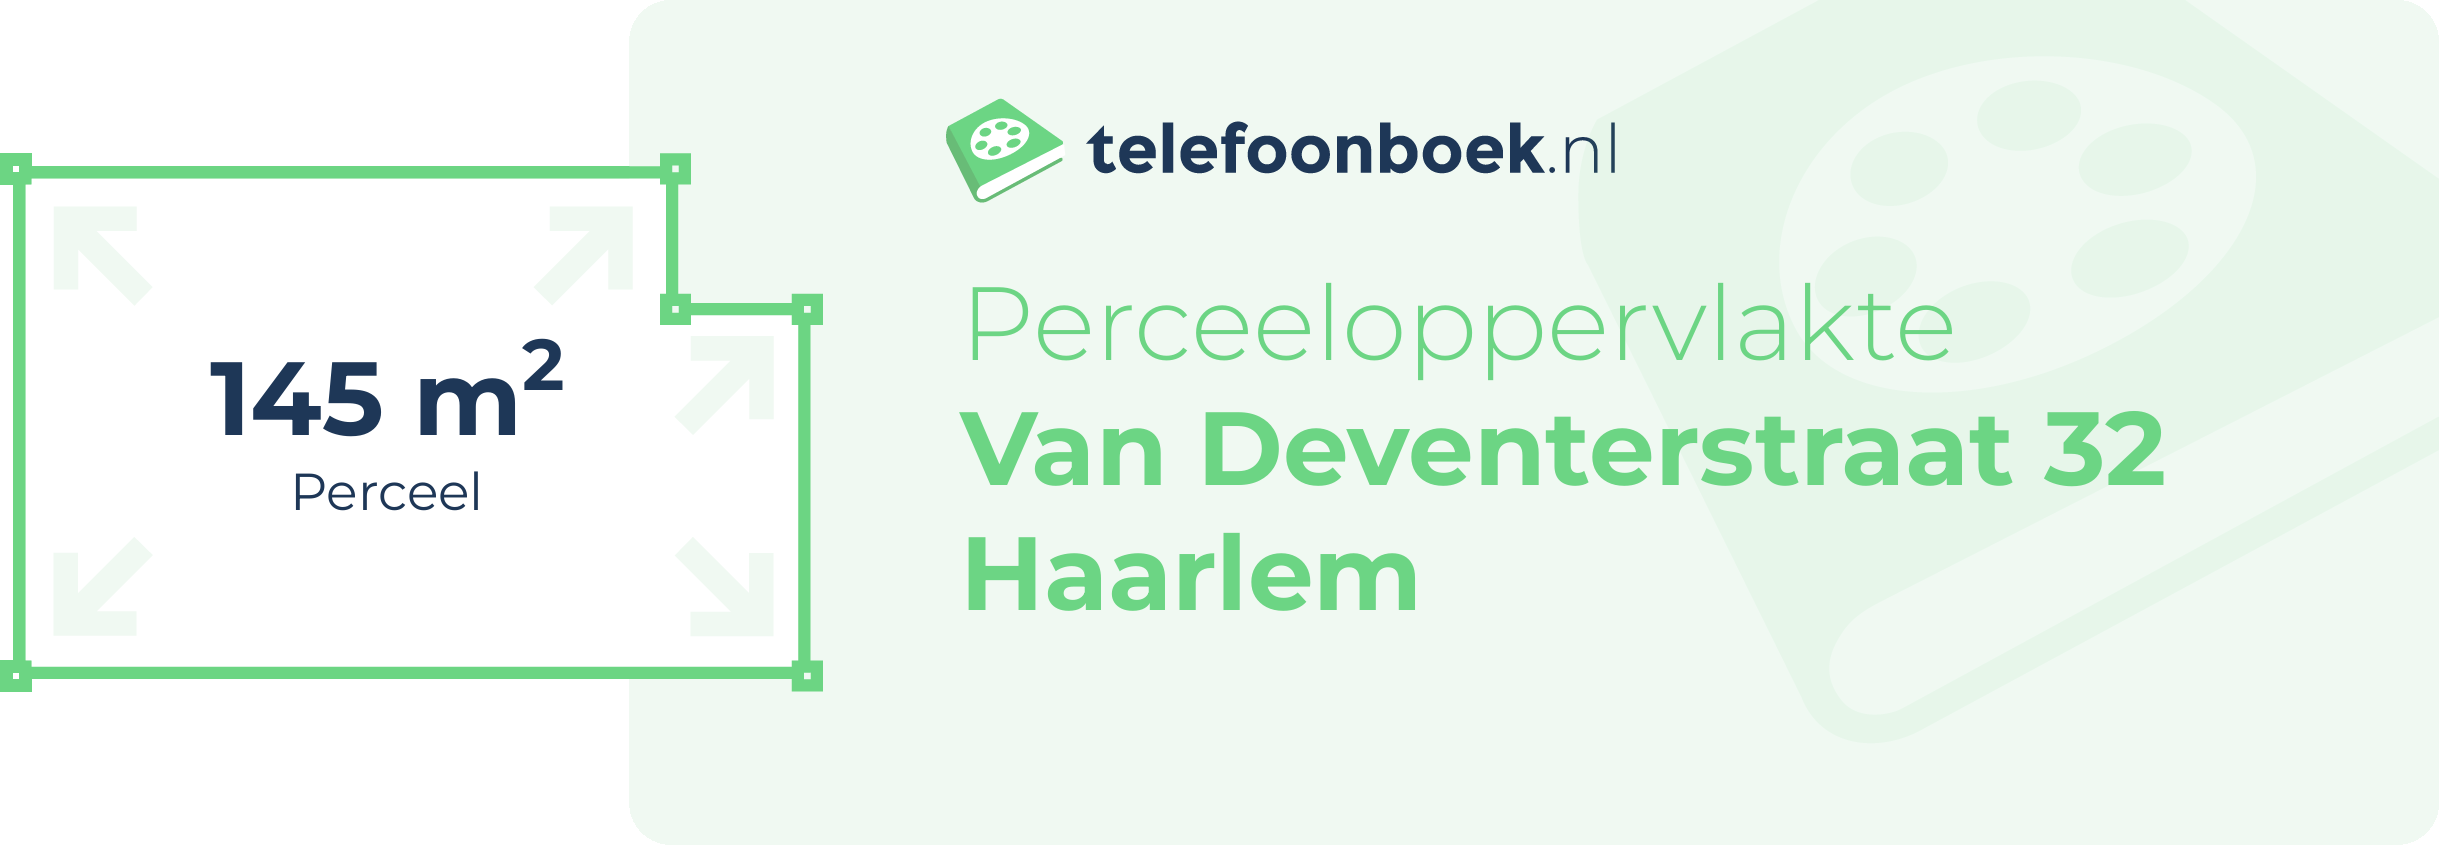 Perceeloppervlakte Van Deventerstraat 32 Haarlem